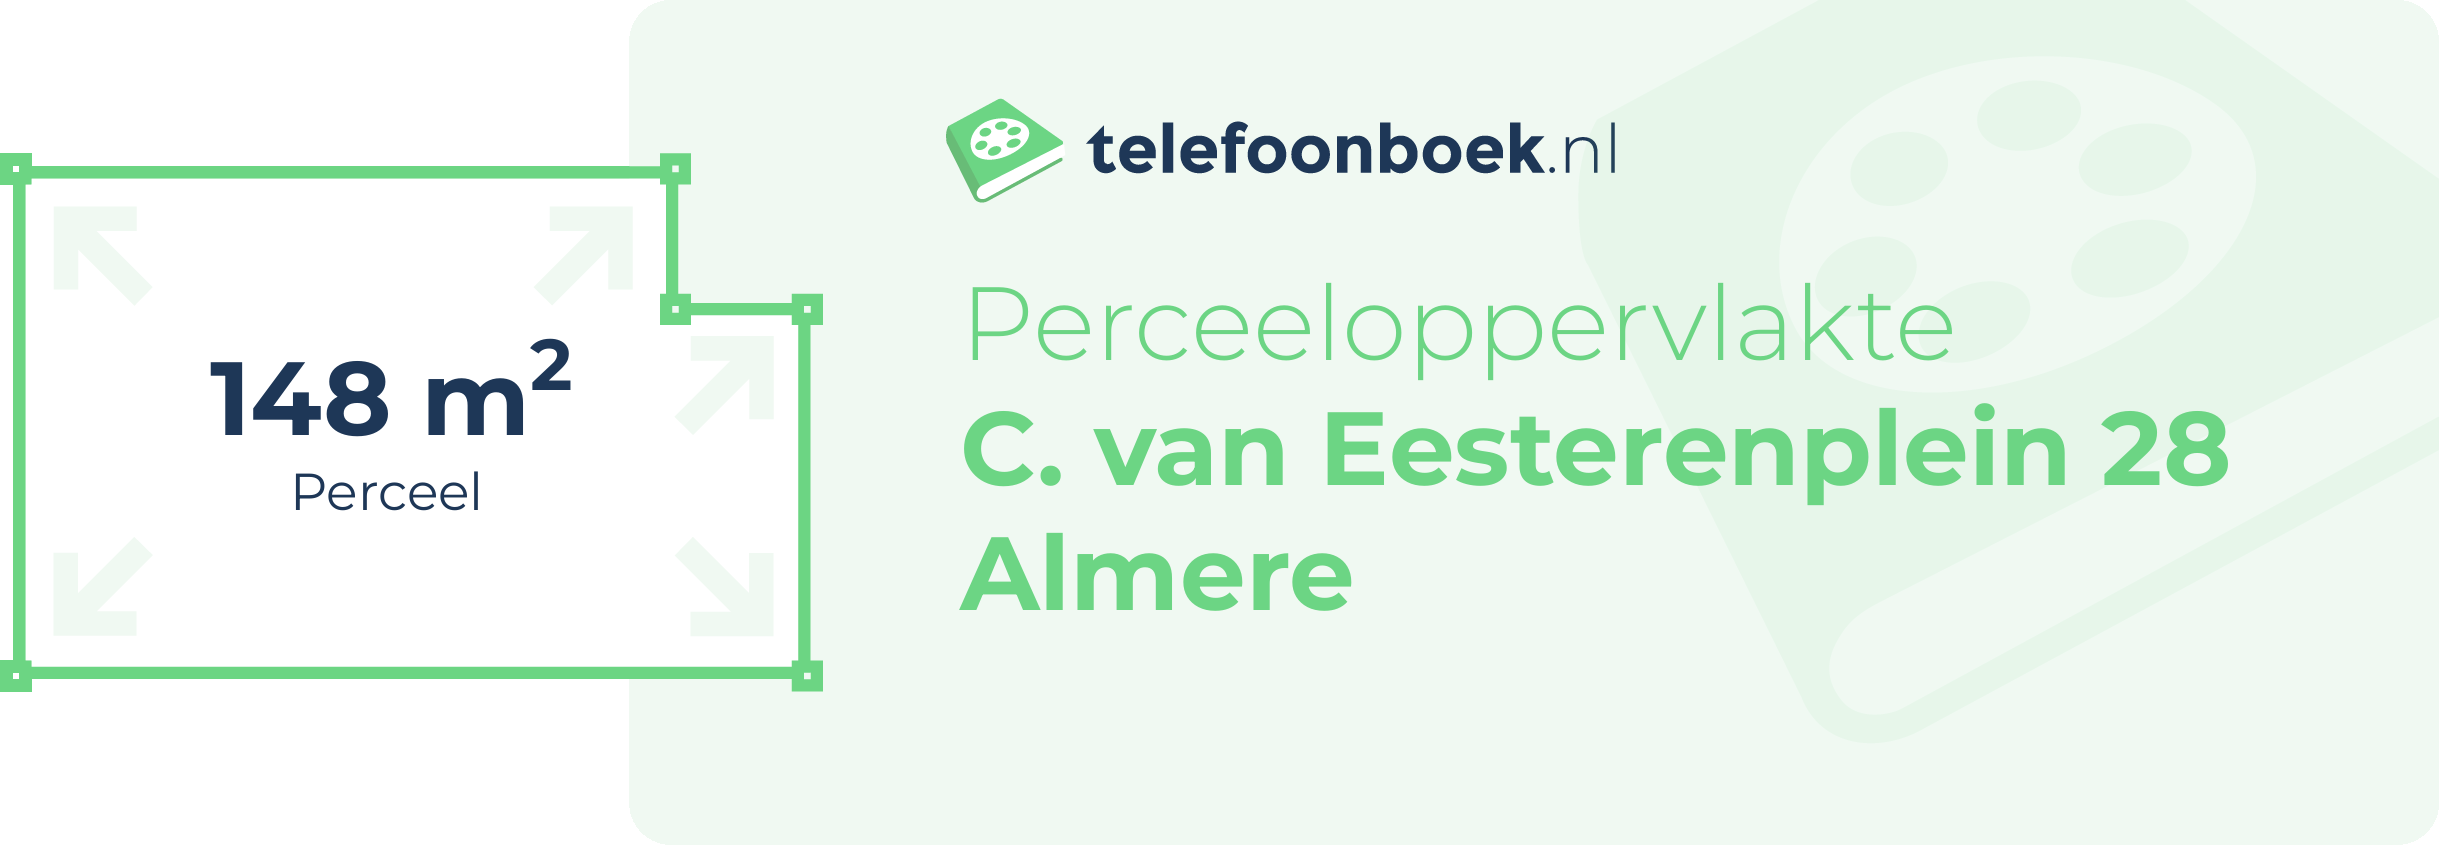 Perceeloppervlakte C. Van Eesterenplein 28 Almere